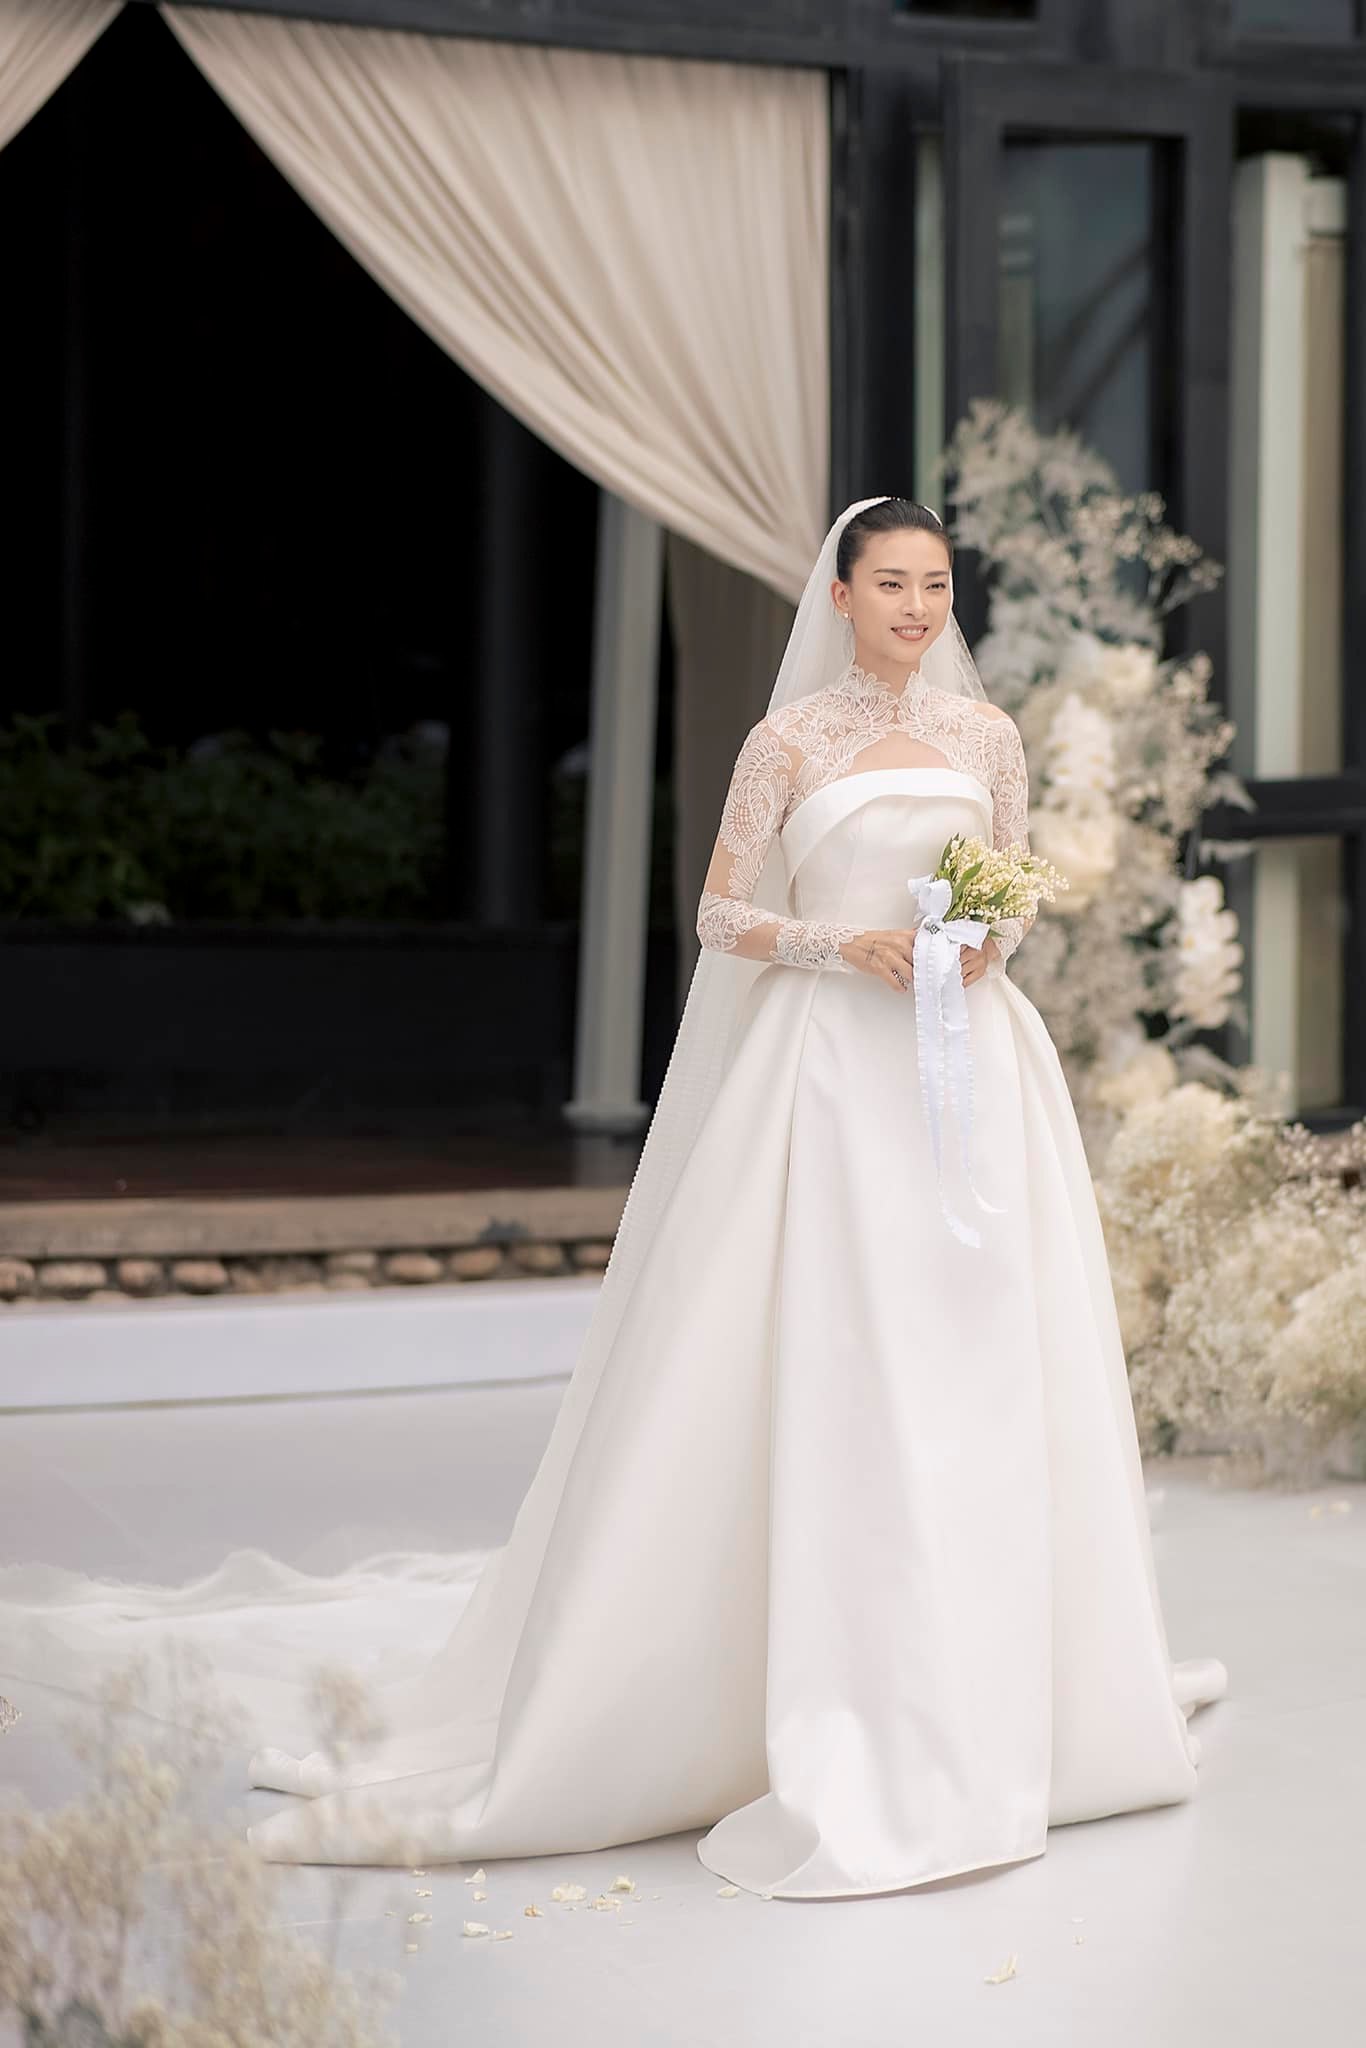 Ngô Thanh Vân đưa ra yêu cầu rất khó về váy cưới: Đơn giản nhưng nổi bật, bền lâu theo thời gian, mang đậm nét hoàng gia như Grace Kelly - Ảnh 1.